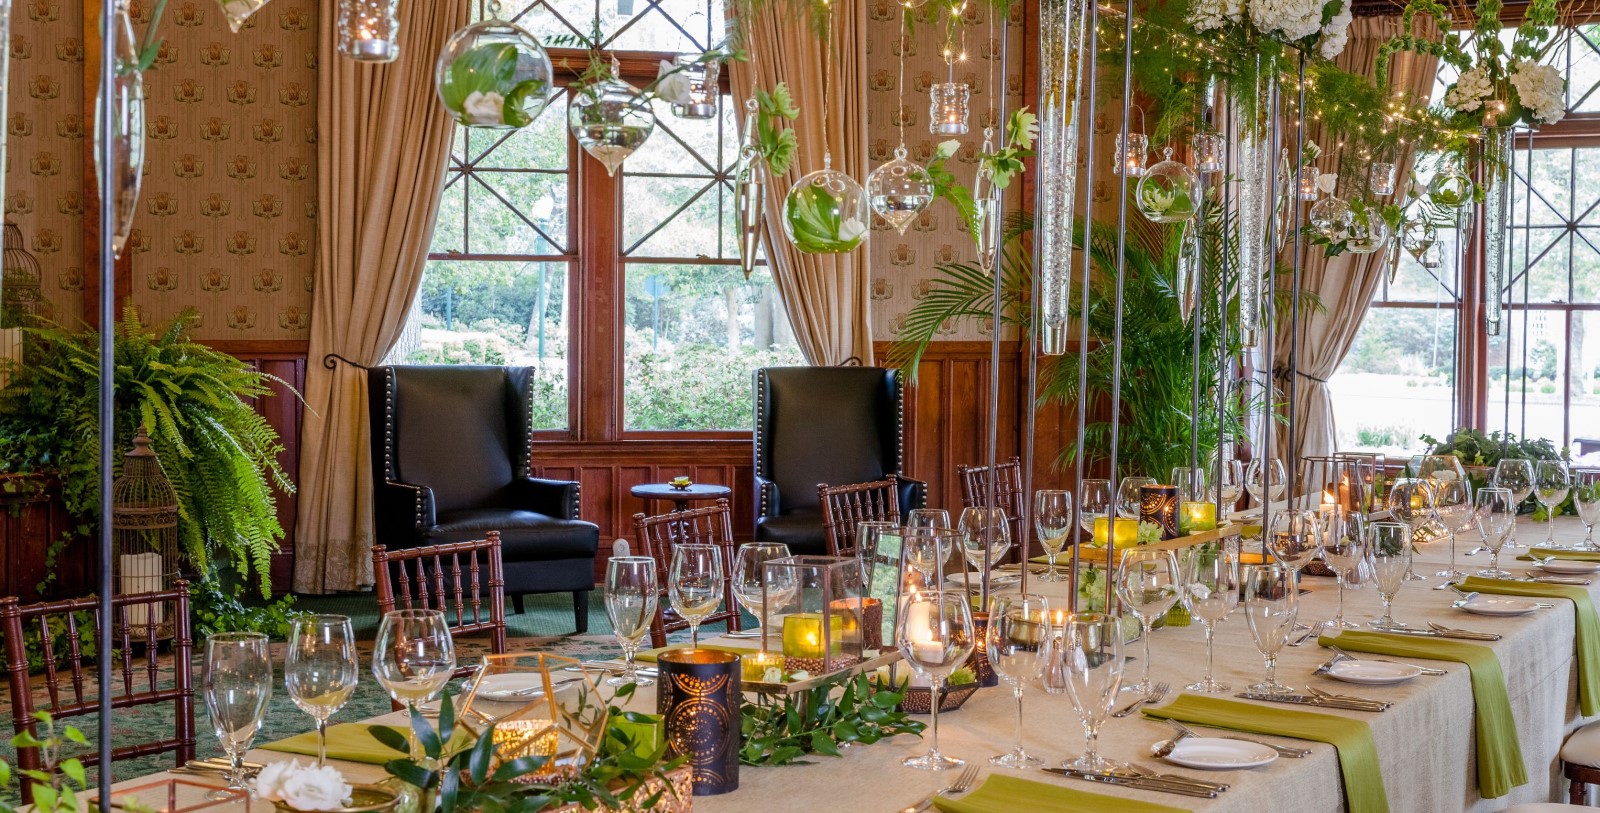 Image of Evergreen Banquet at Pinehurst Resort, 1895, Member of Historic Hotels of America, in Village of Pinehurst, North Carolina, Special Occasions